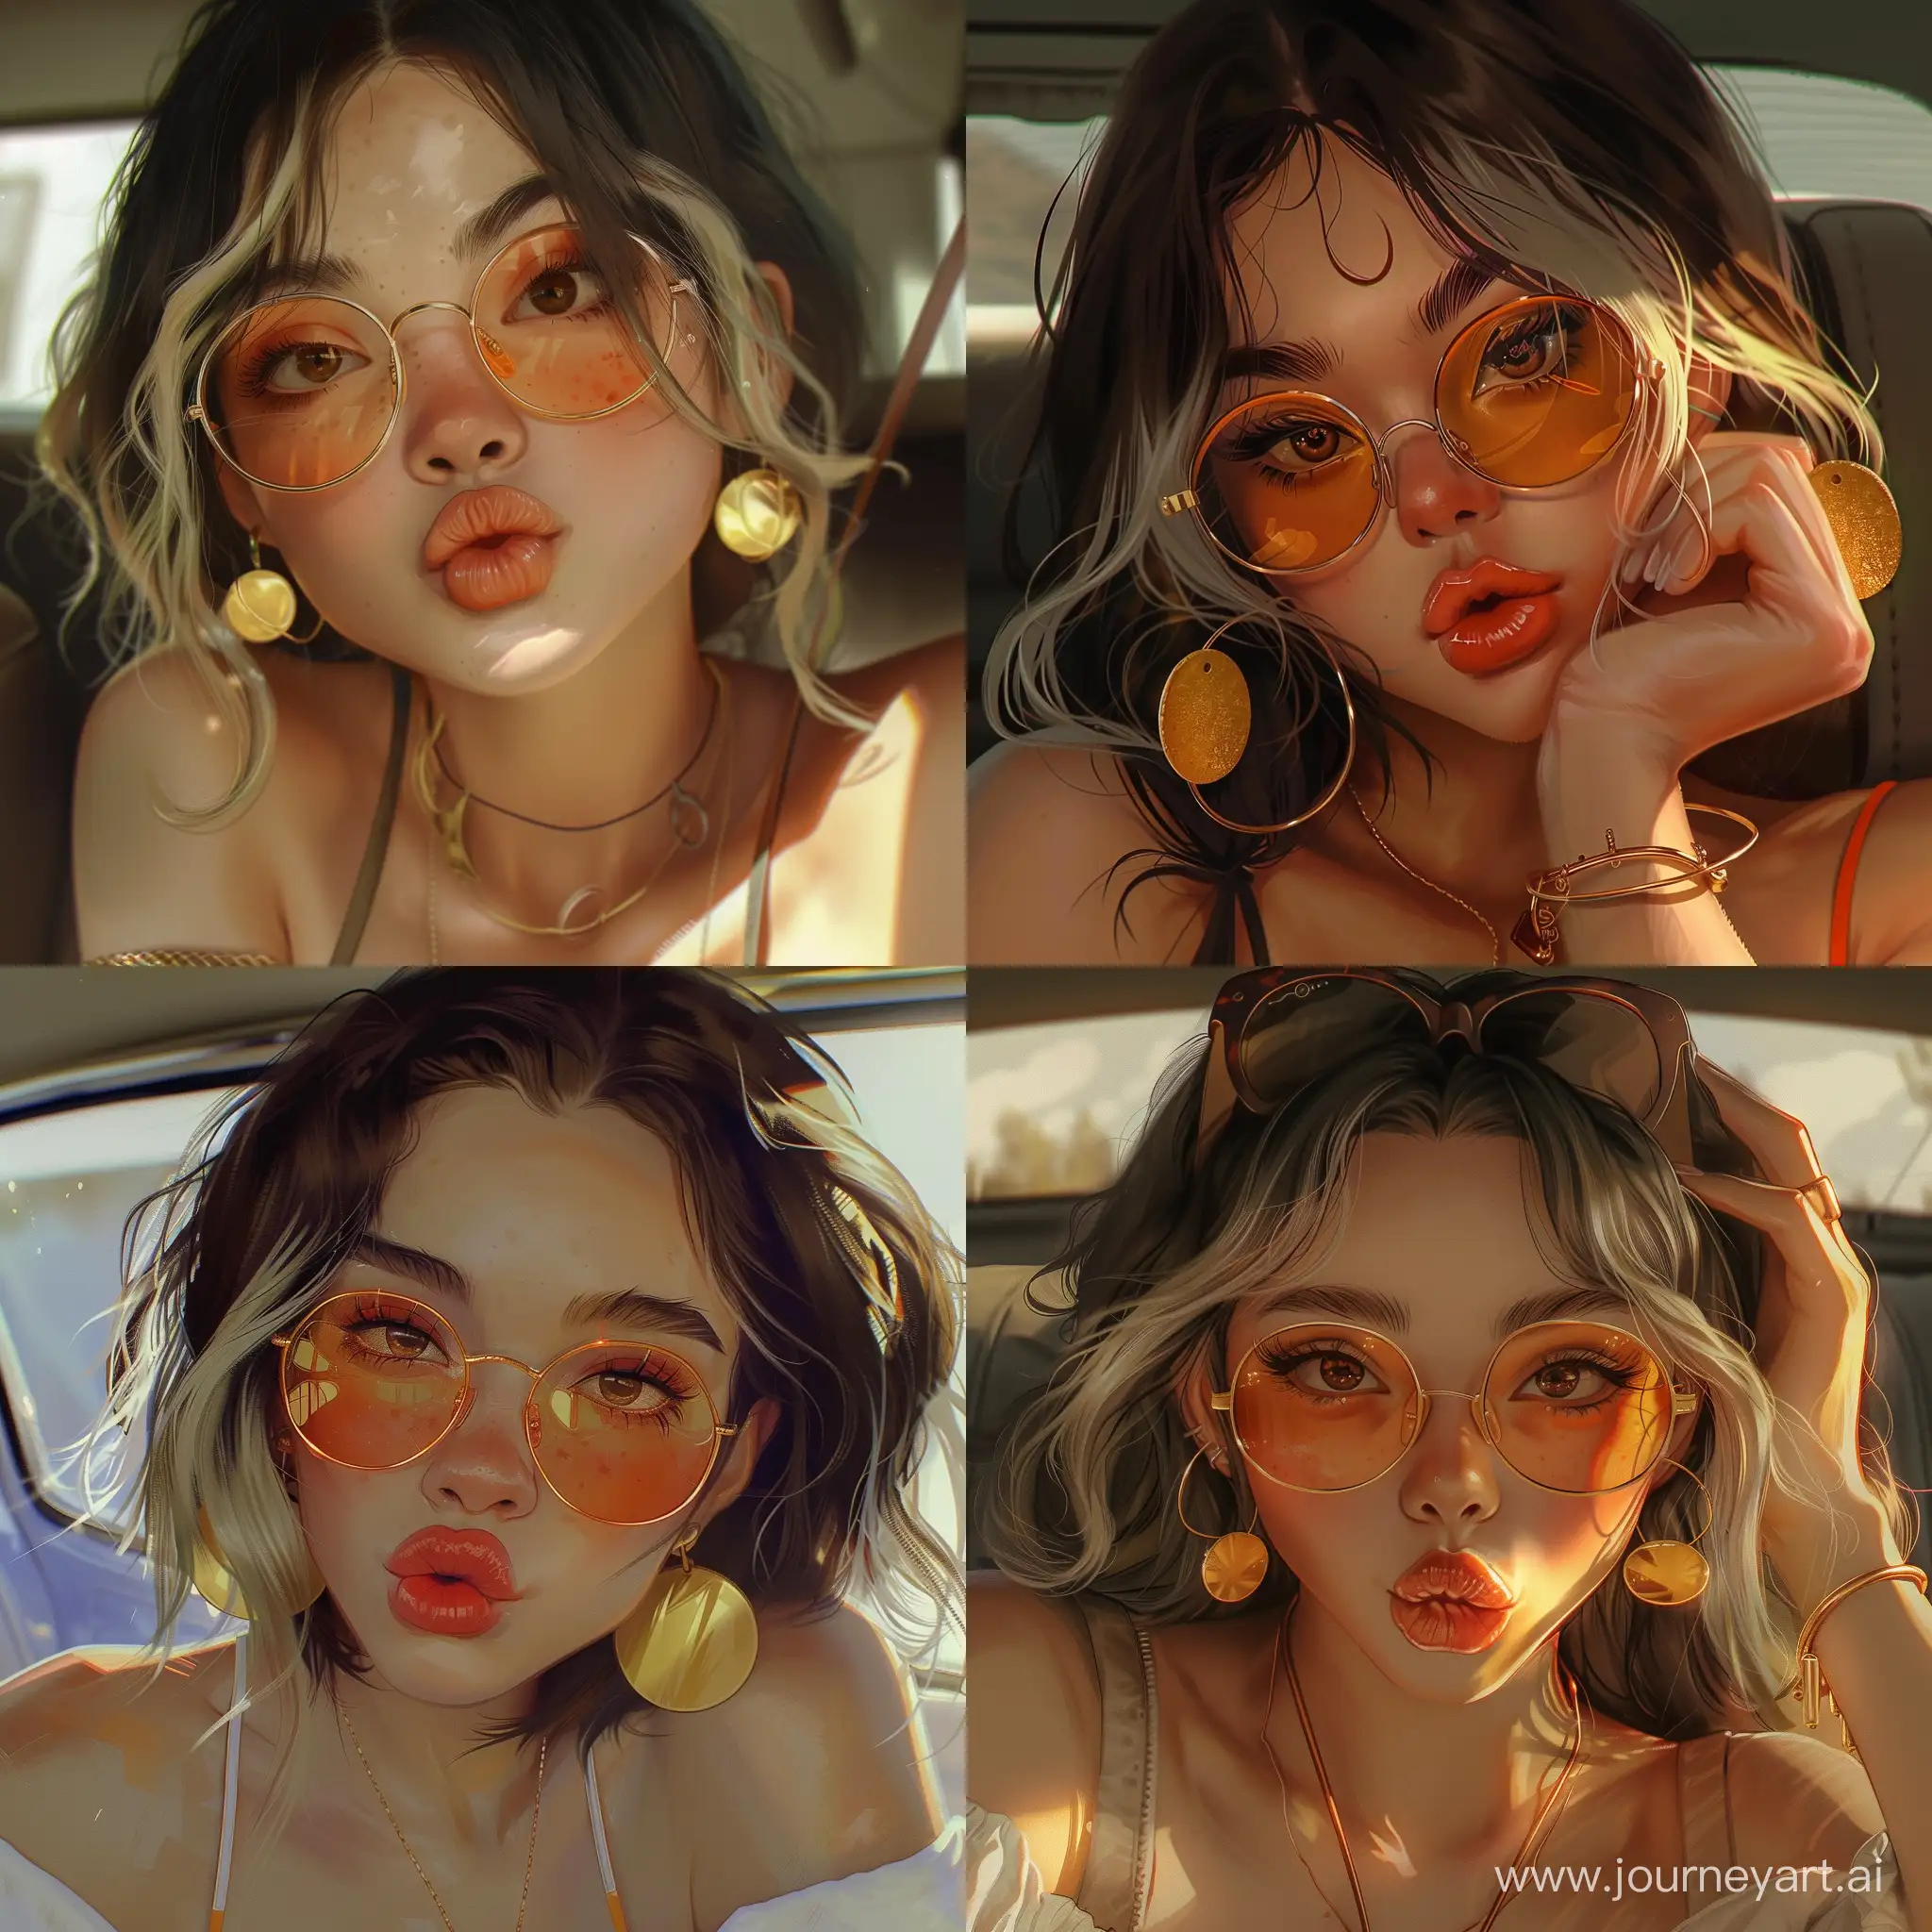 нарисуй рисунок девушки с милированными волосами чуть ниже груди, которая сидит в машине и смотрит в камеру, круглыми золотыми серьгами, оранжевыми очками и карими глазами, она делает губы бантиком и смотрит в камеру